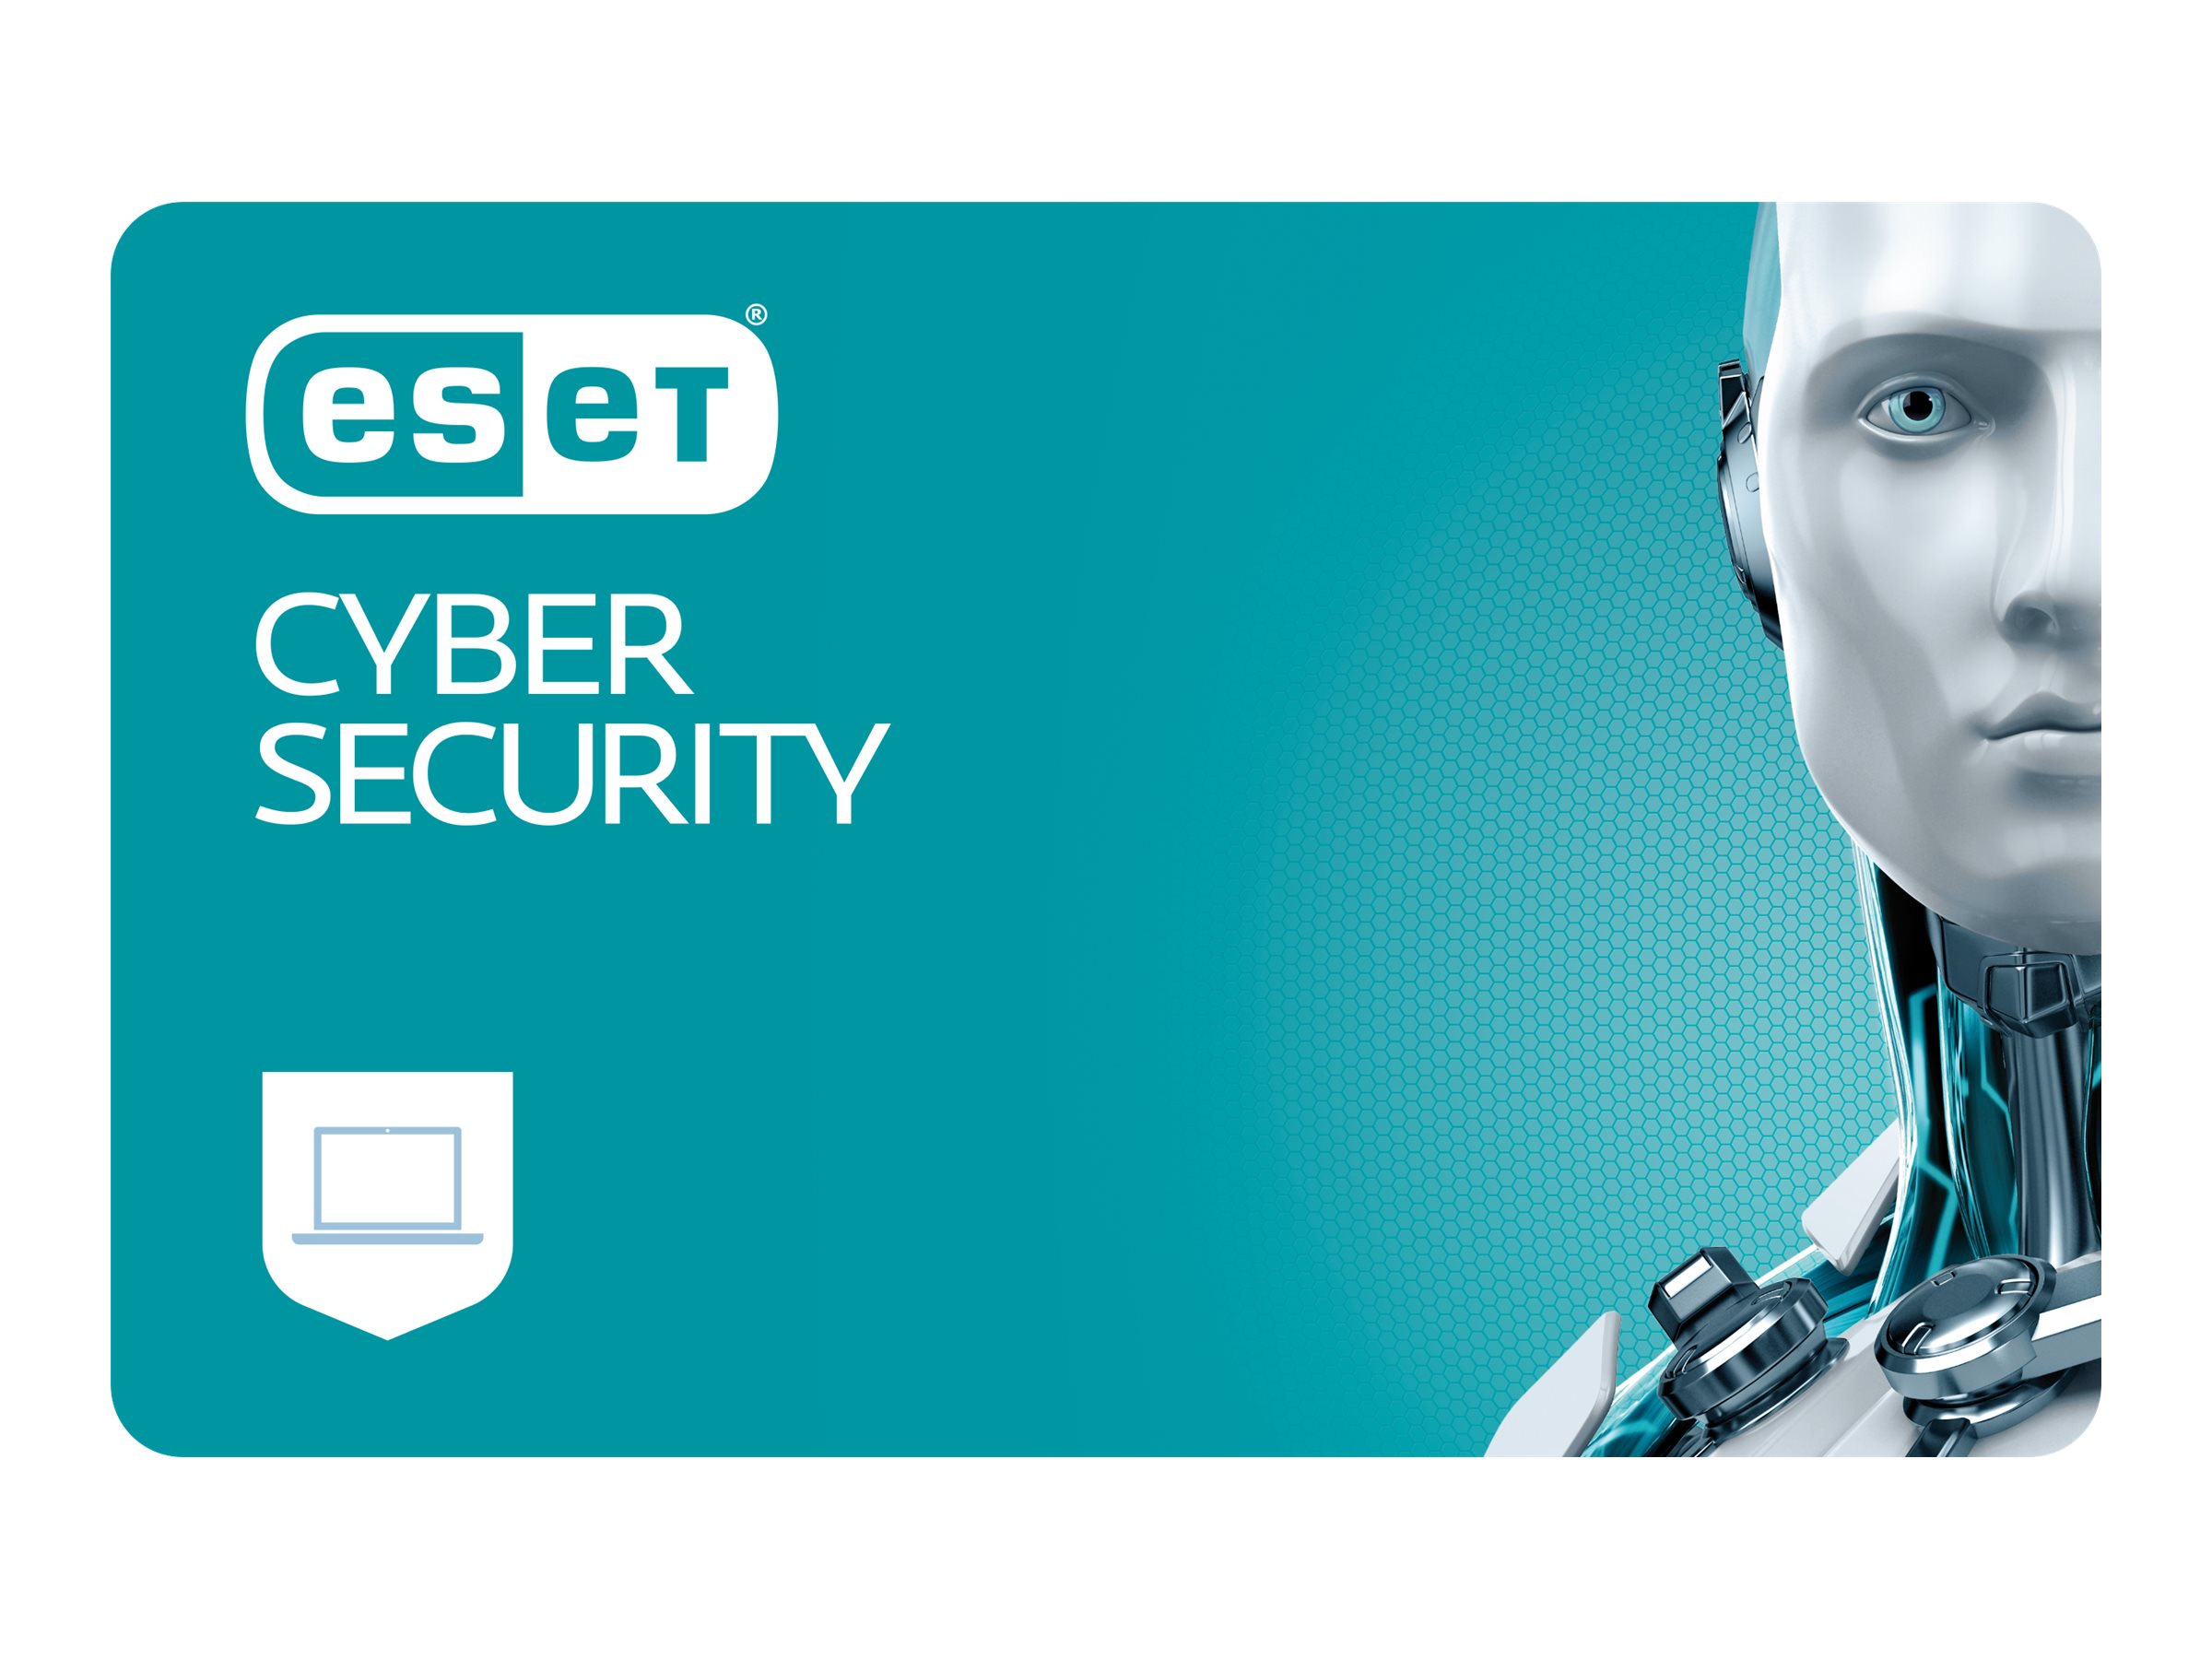 ESET Cyber Security Lizenz per Devices (4 Devices) inklusive 1 Jahr Aktualisierungsgarantie